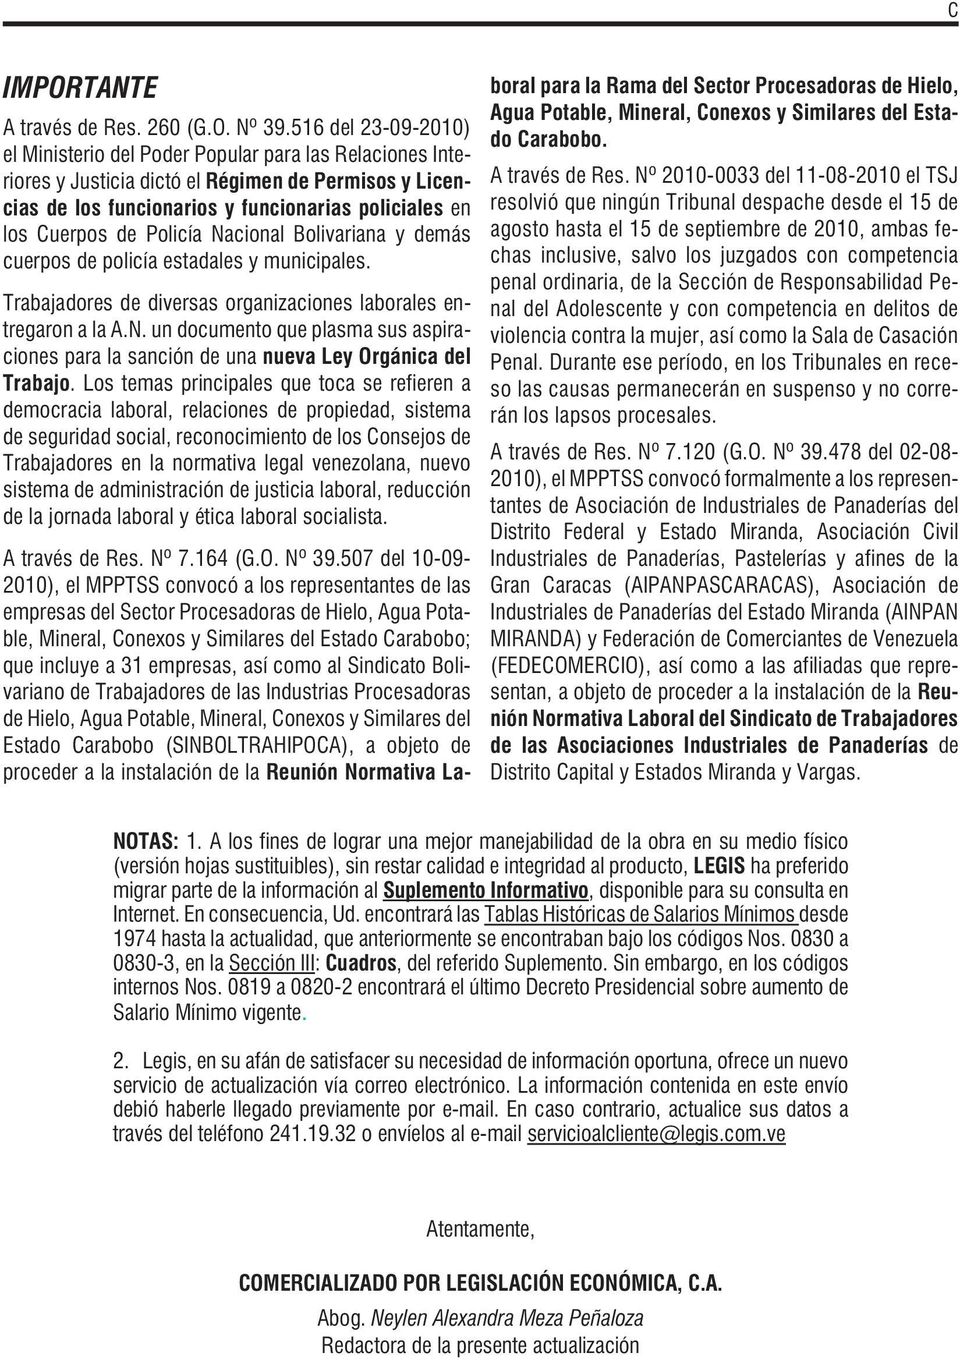 Policía Nacional Bolivariana y demás cuerpos de policía estadales y municipales. Trabajadores de diversas organizaciones laborales entregaron a la A.N. un documento que plasma sus aspiraciones para la sanción de una nueva Ley Orgánica del Trabajo.